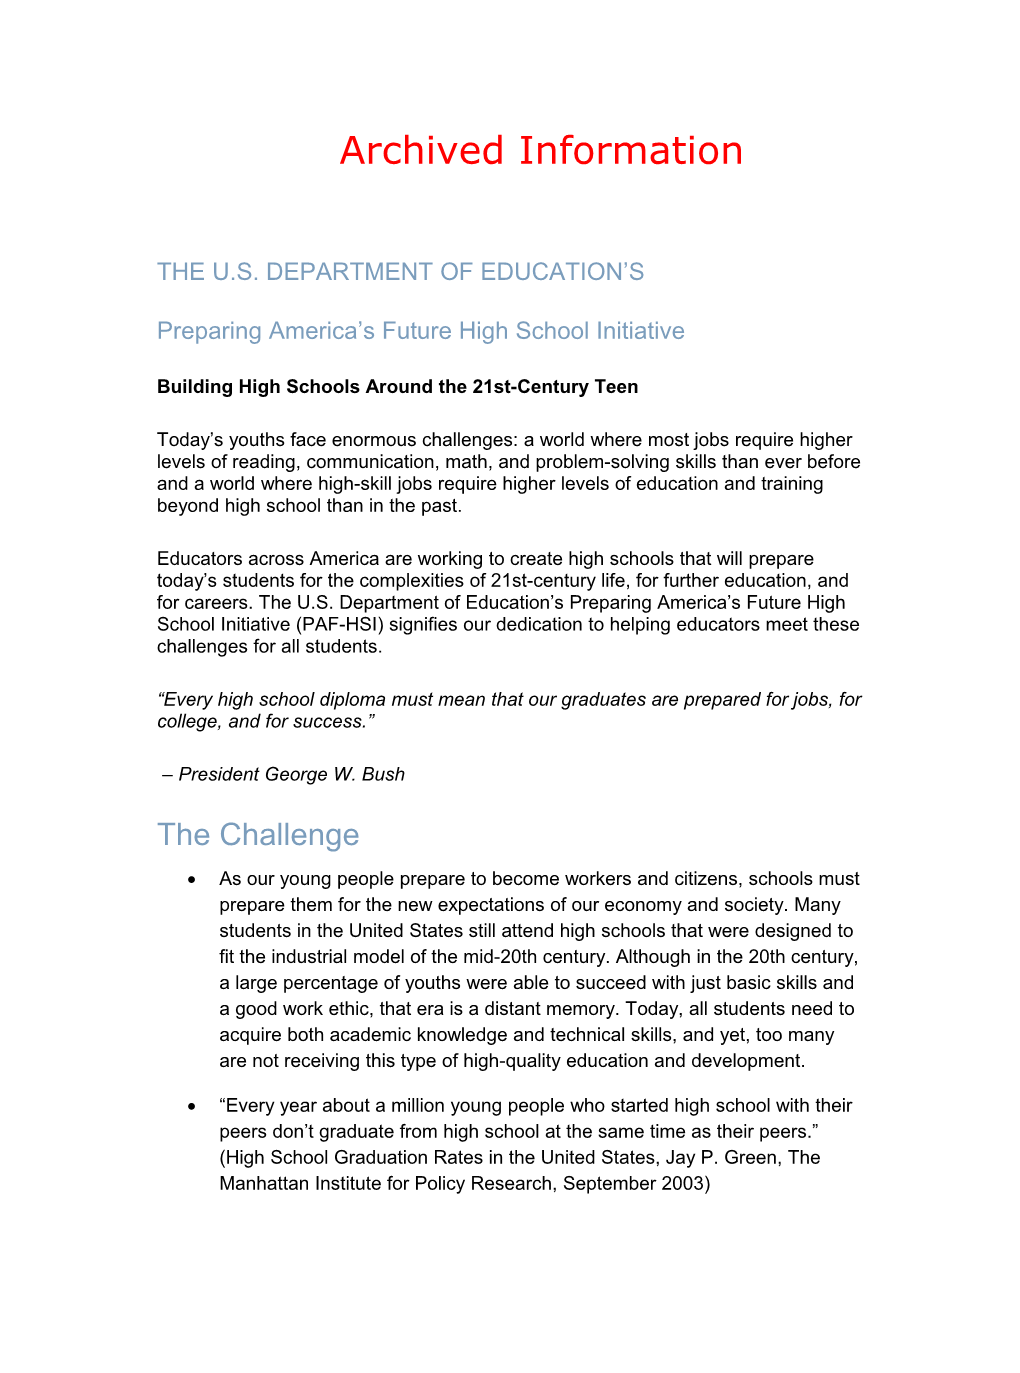 Archived: Preparing America's Future High School Initiative (MS Word)